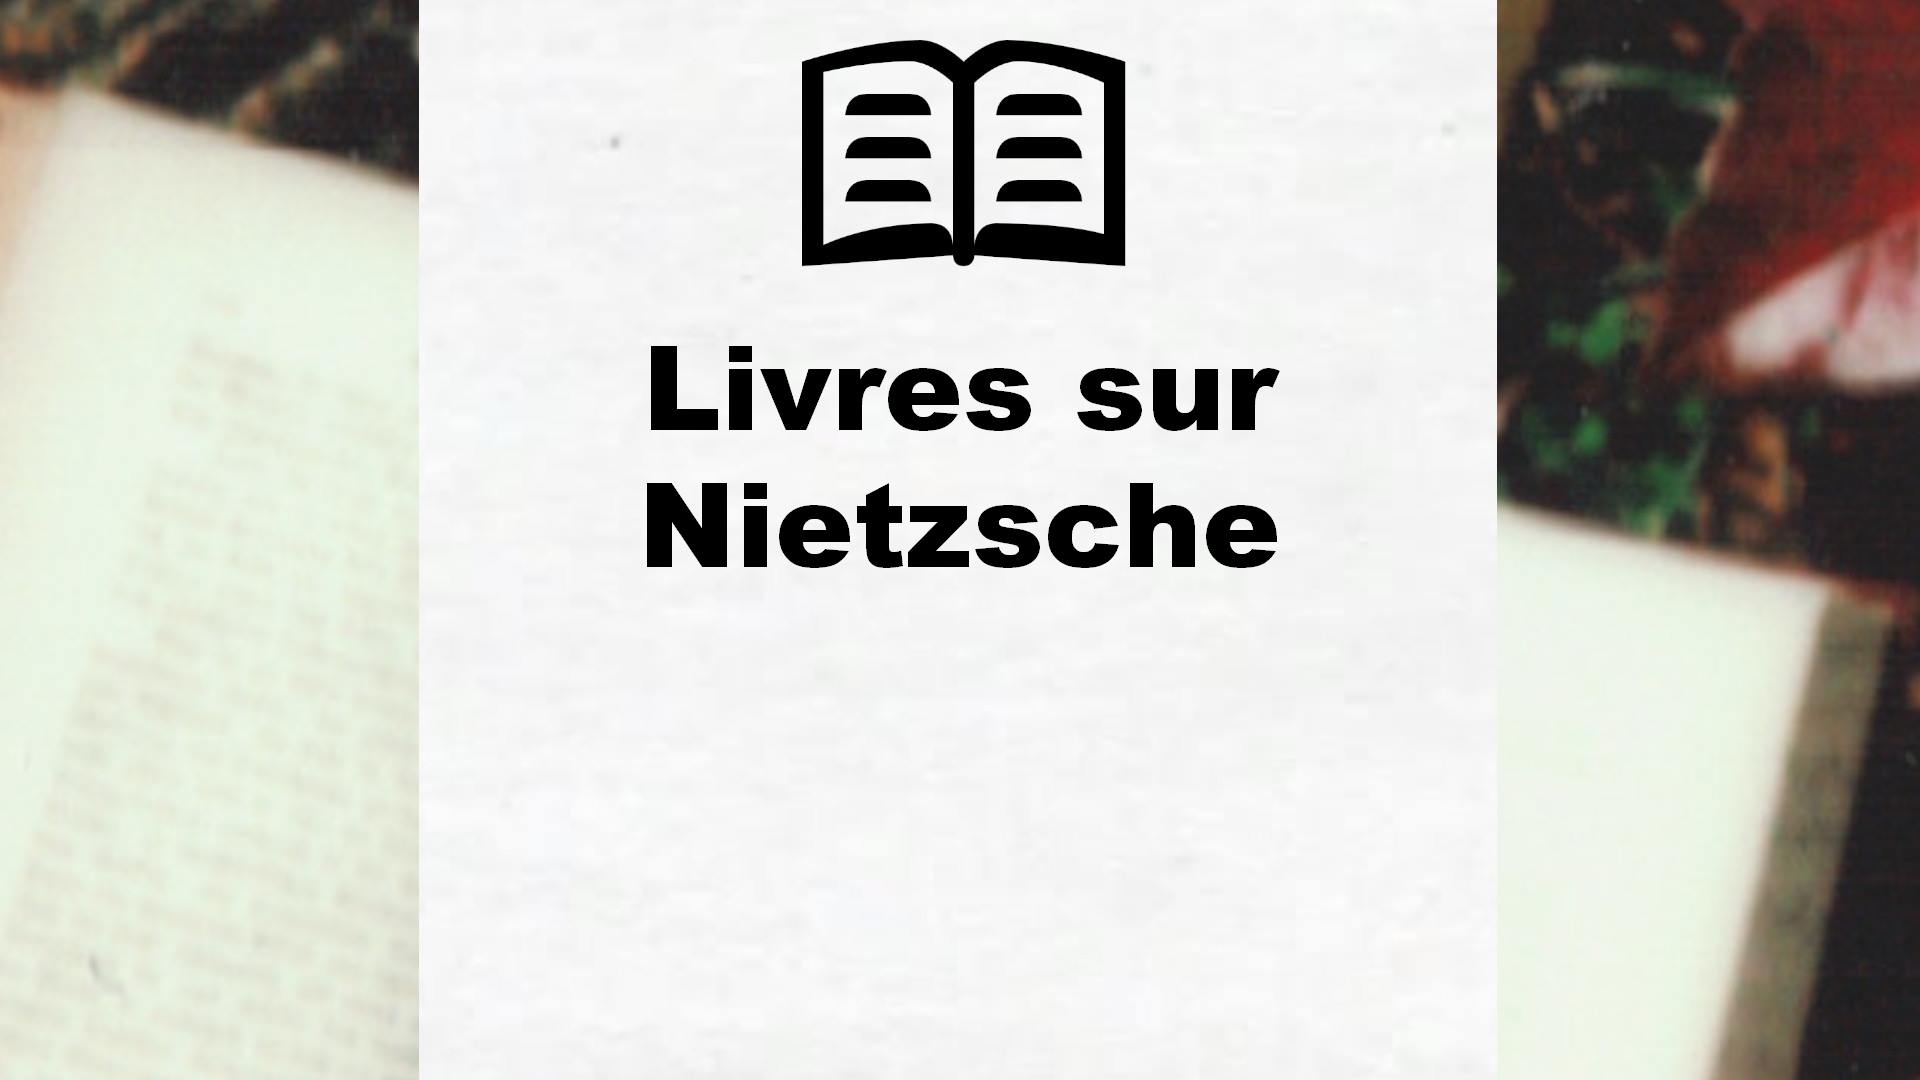 Livres sur Nietzsche